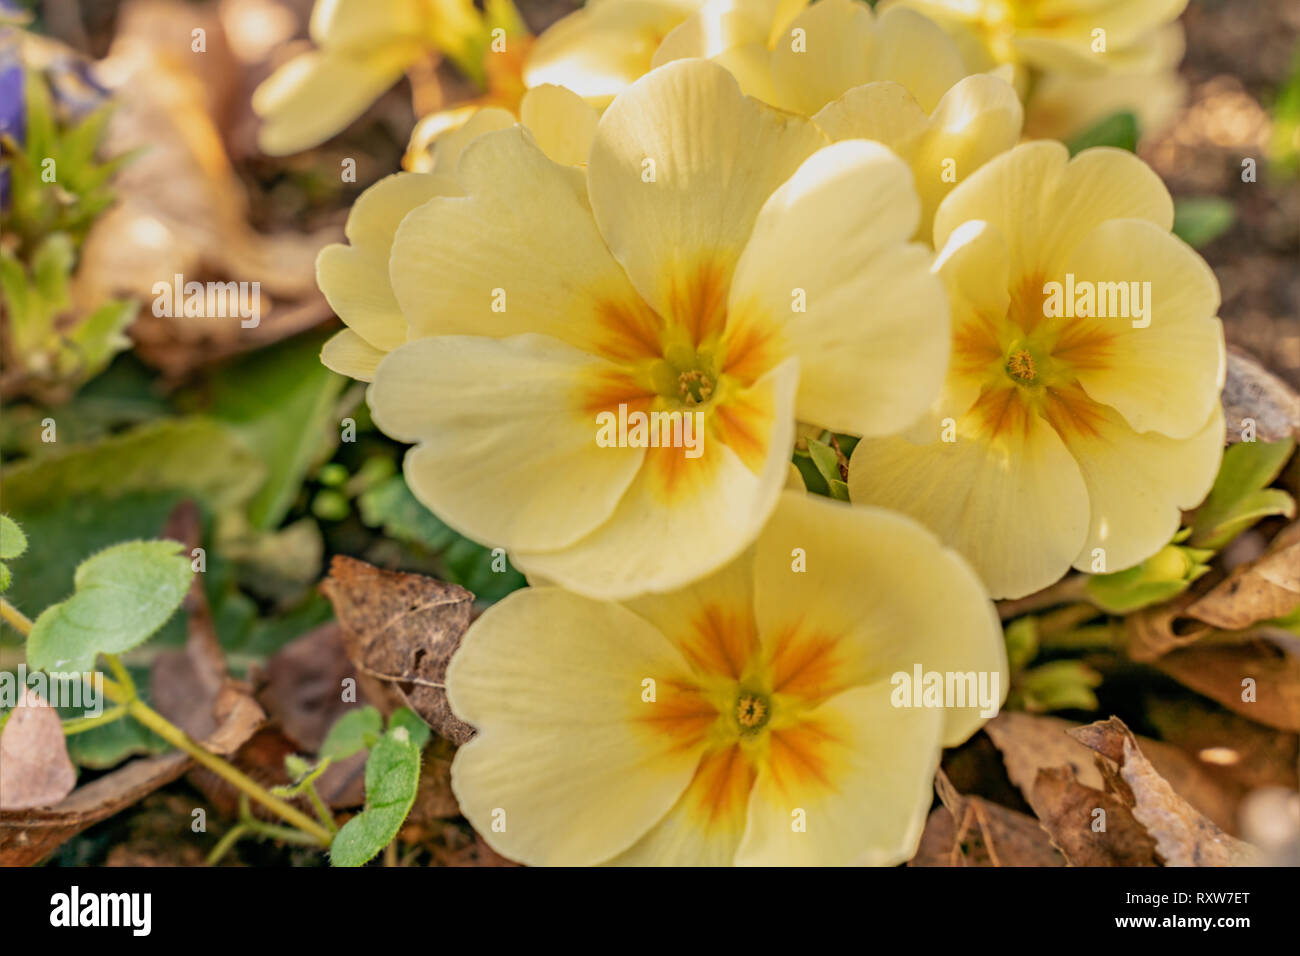 Blumen von Pansy in einem Garten Bett in voller Blüte. Gelbe Stiefmütterchen repräsentieren Glück oder ein helles Disposition, die für den Frühling ideal ist Stockfoto